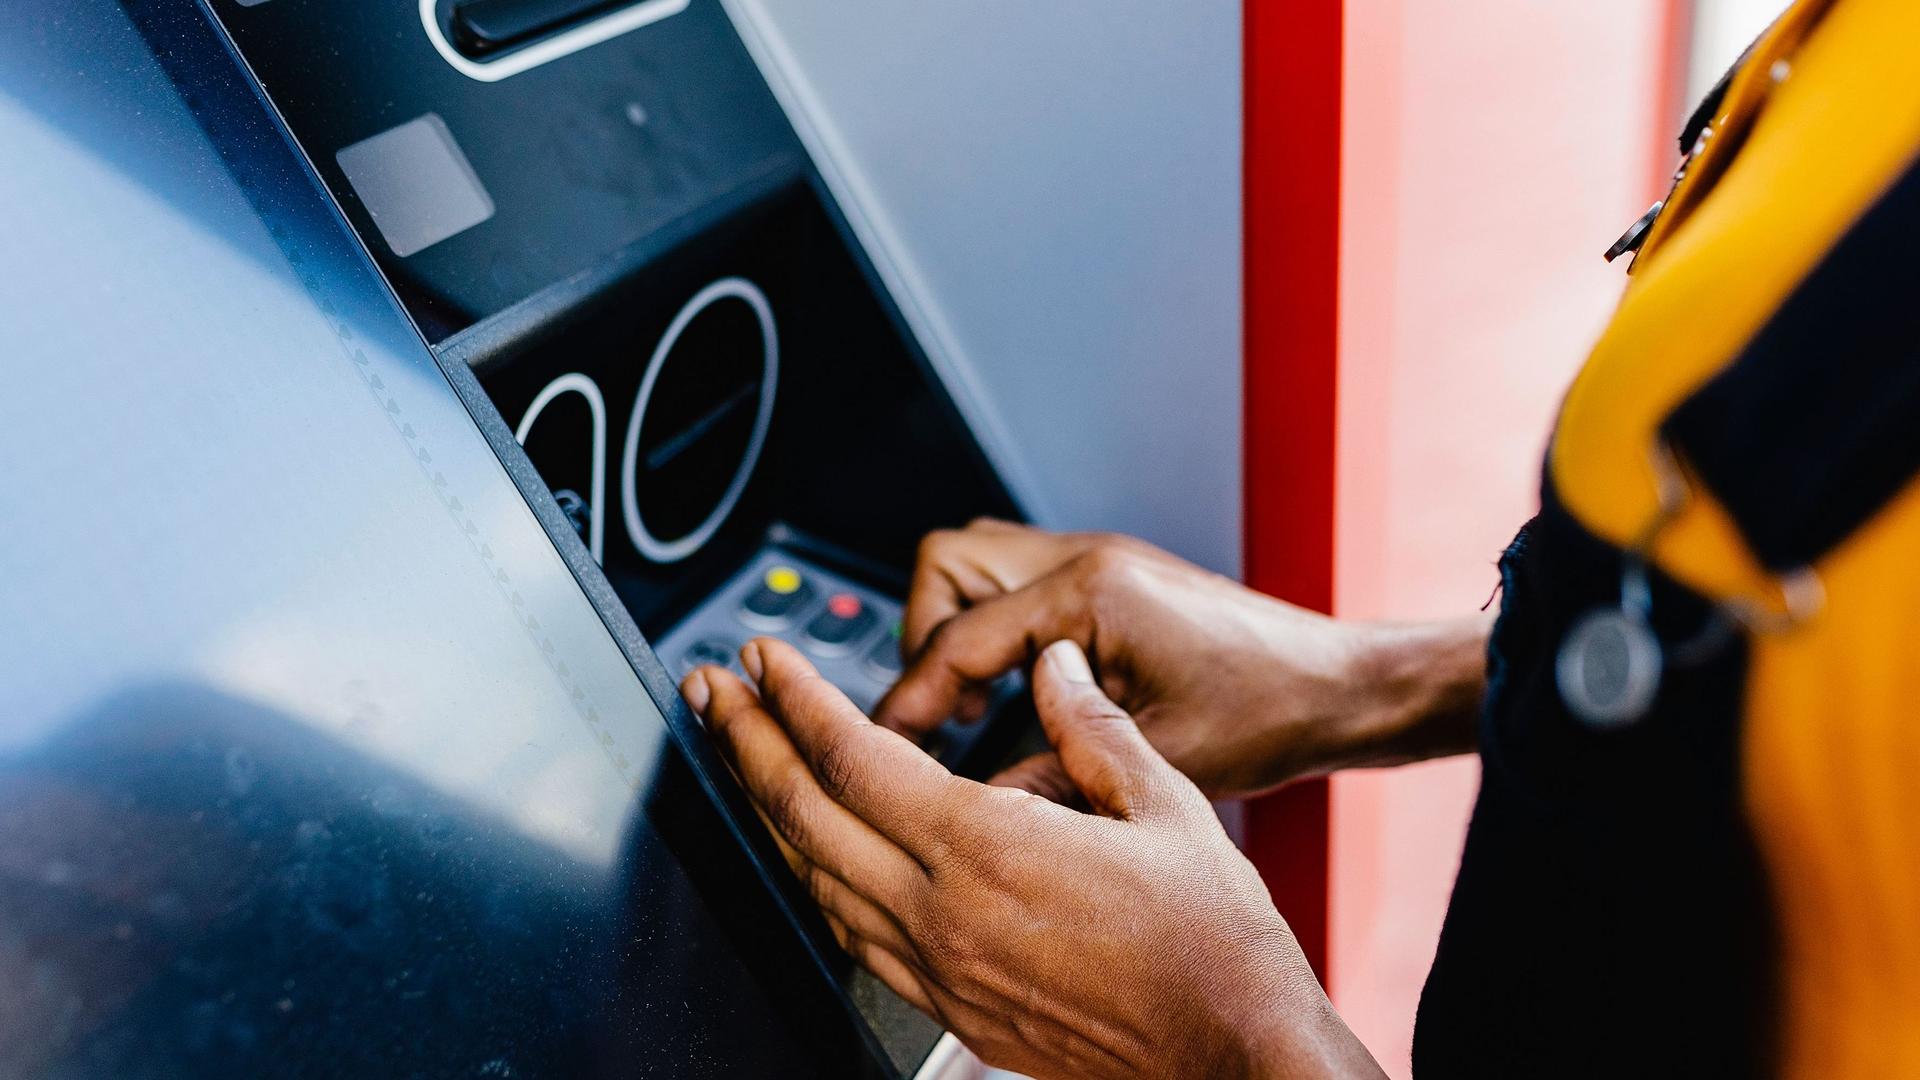 Nahaufnahme der Hände und Arme einer Frau, die mit verdeckter Hand ihren Pin-Code an einem Bankautomaten eingibt.